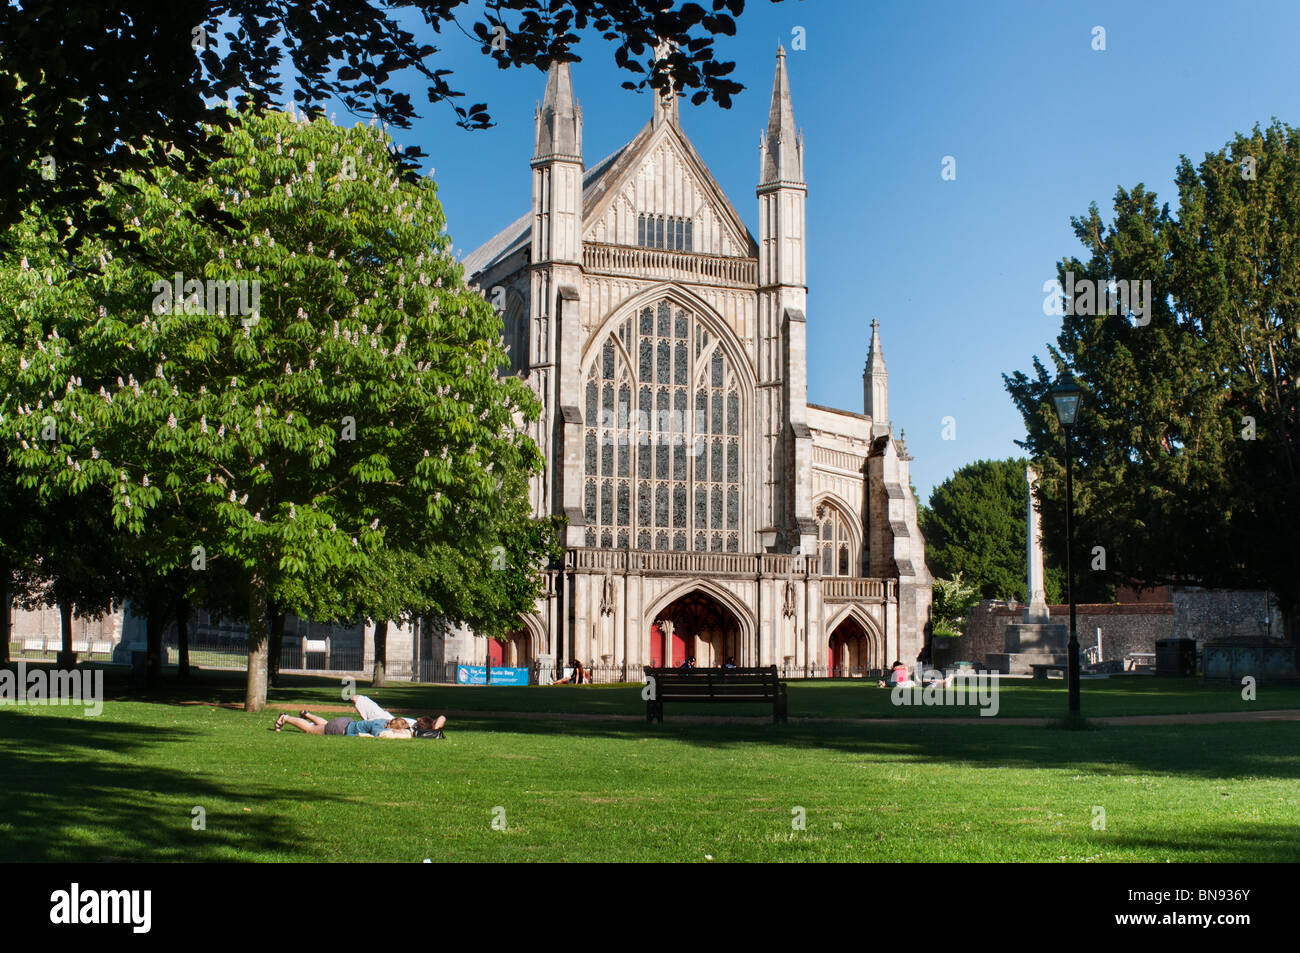 La cathédrale de Winchester au début de l'été avec les marronniers en fleurs Banque D'Images